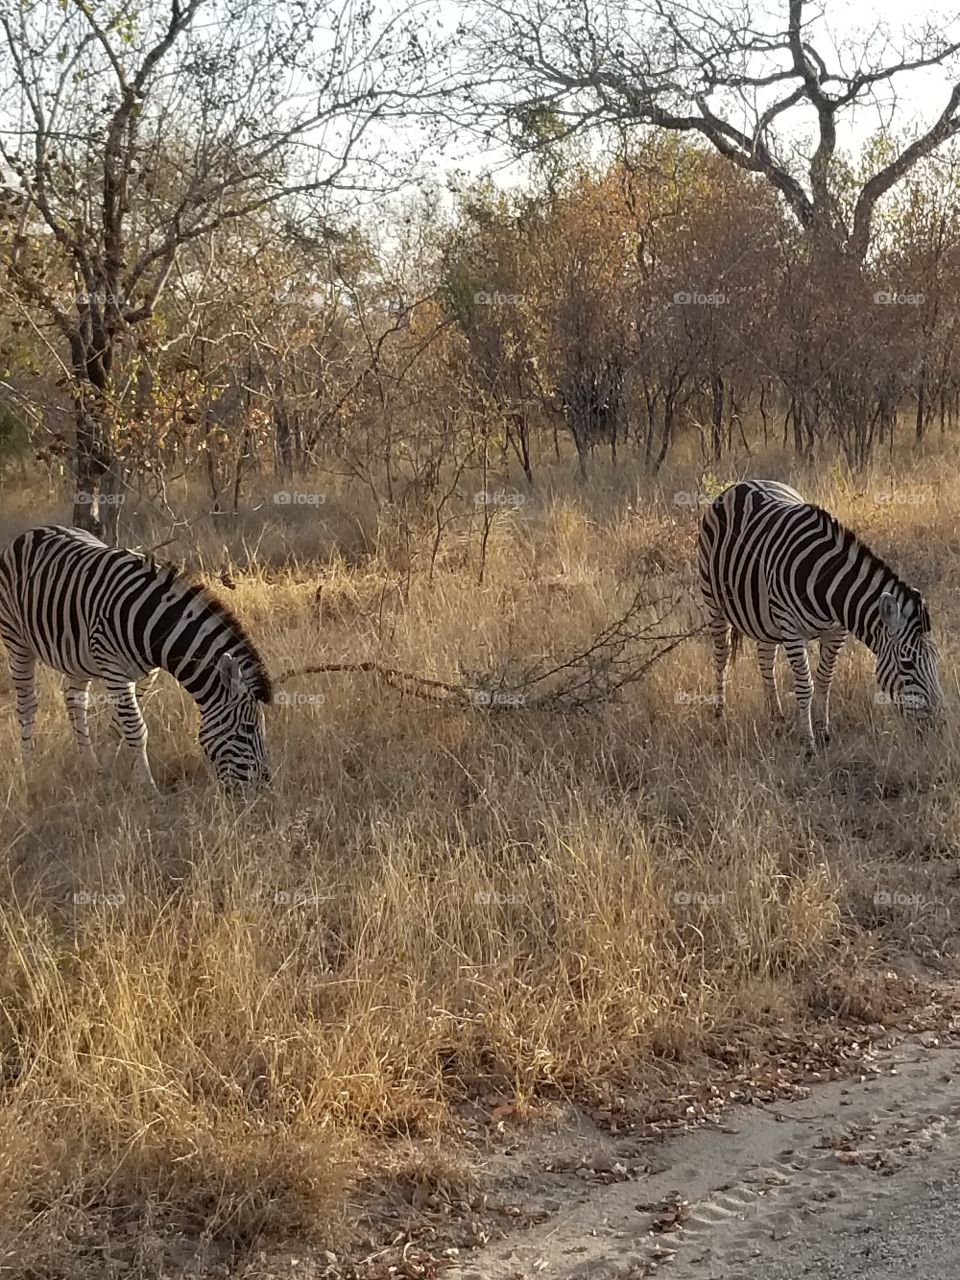 Zebras eating